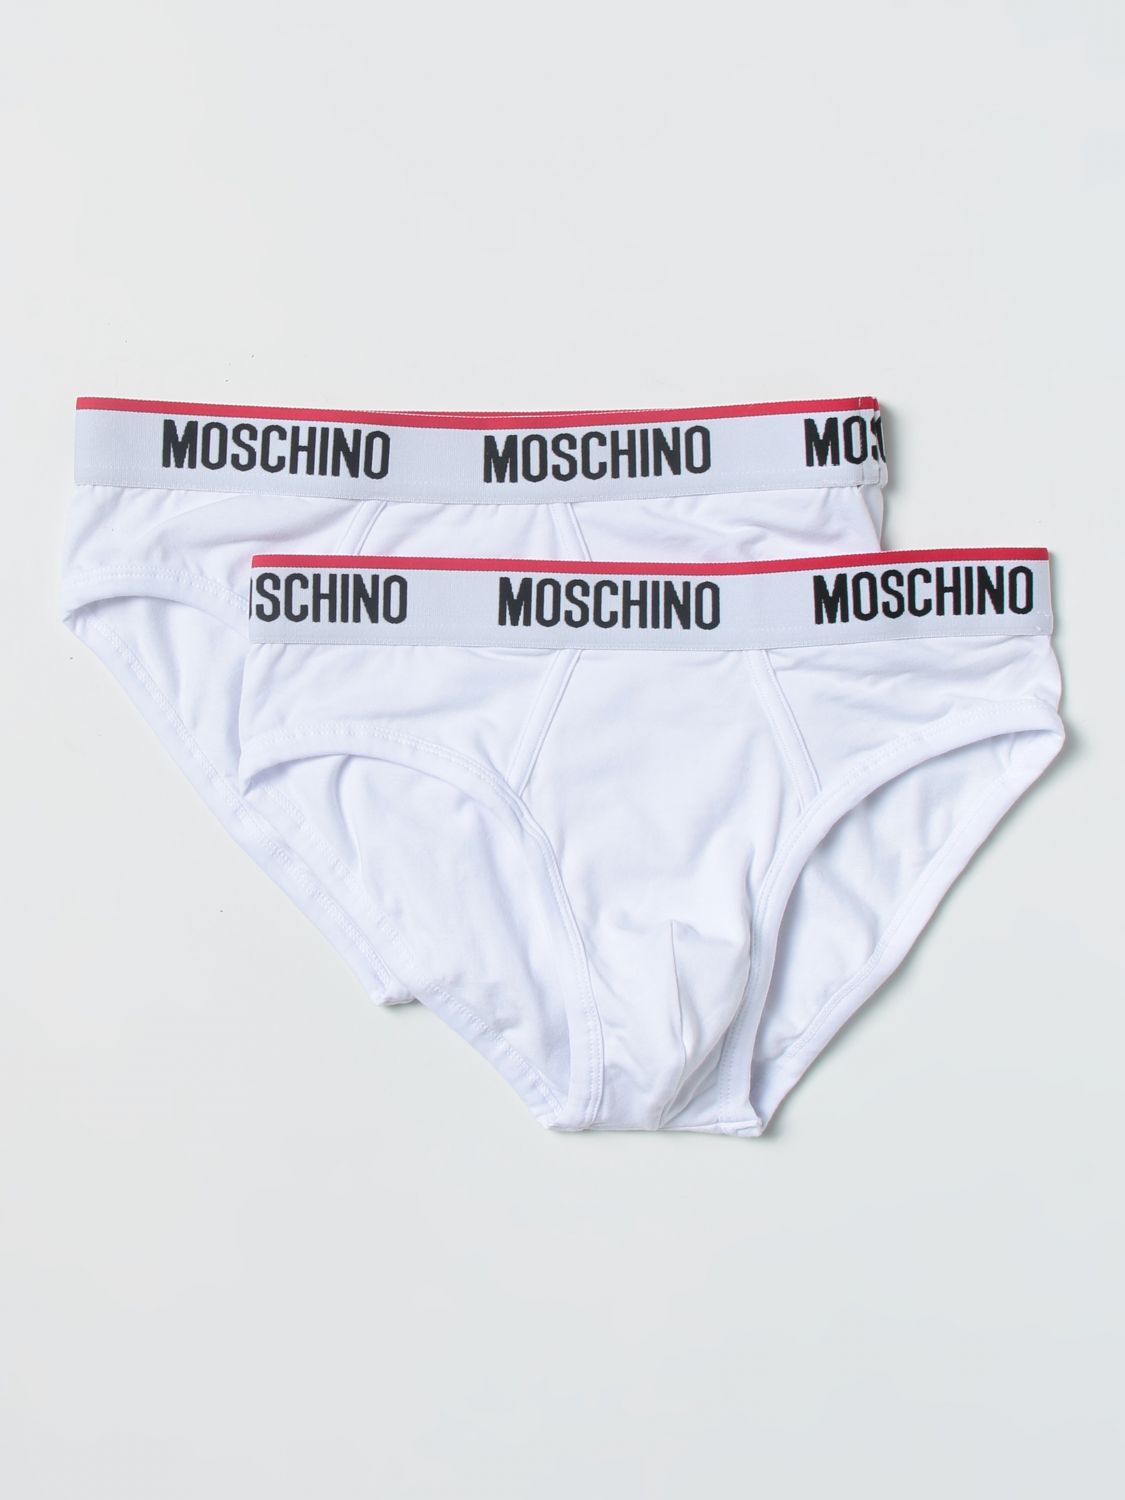 Moschino Underwear Outlet: underwear for men - White | Moschino ...